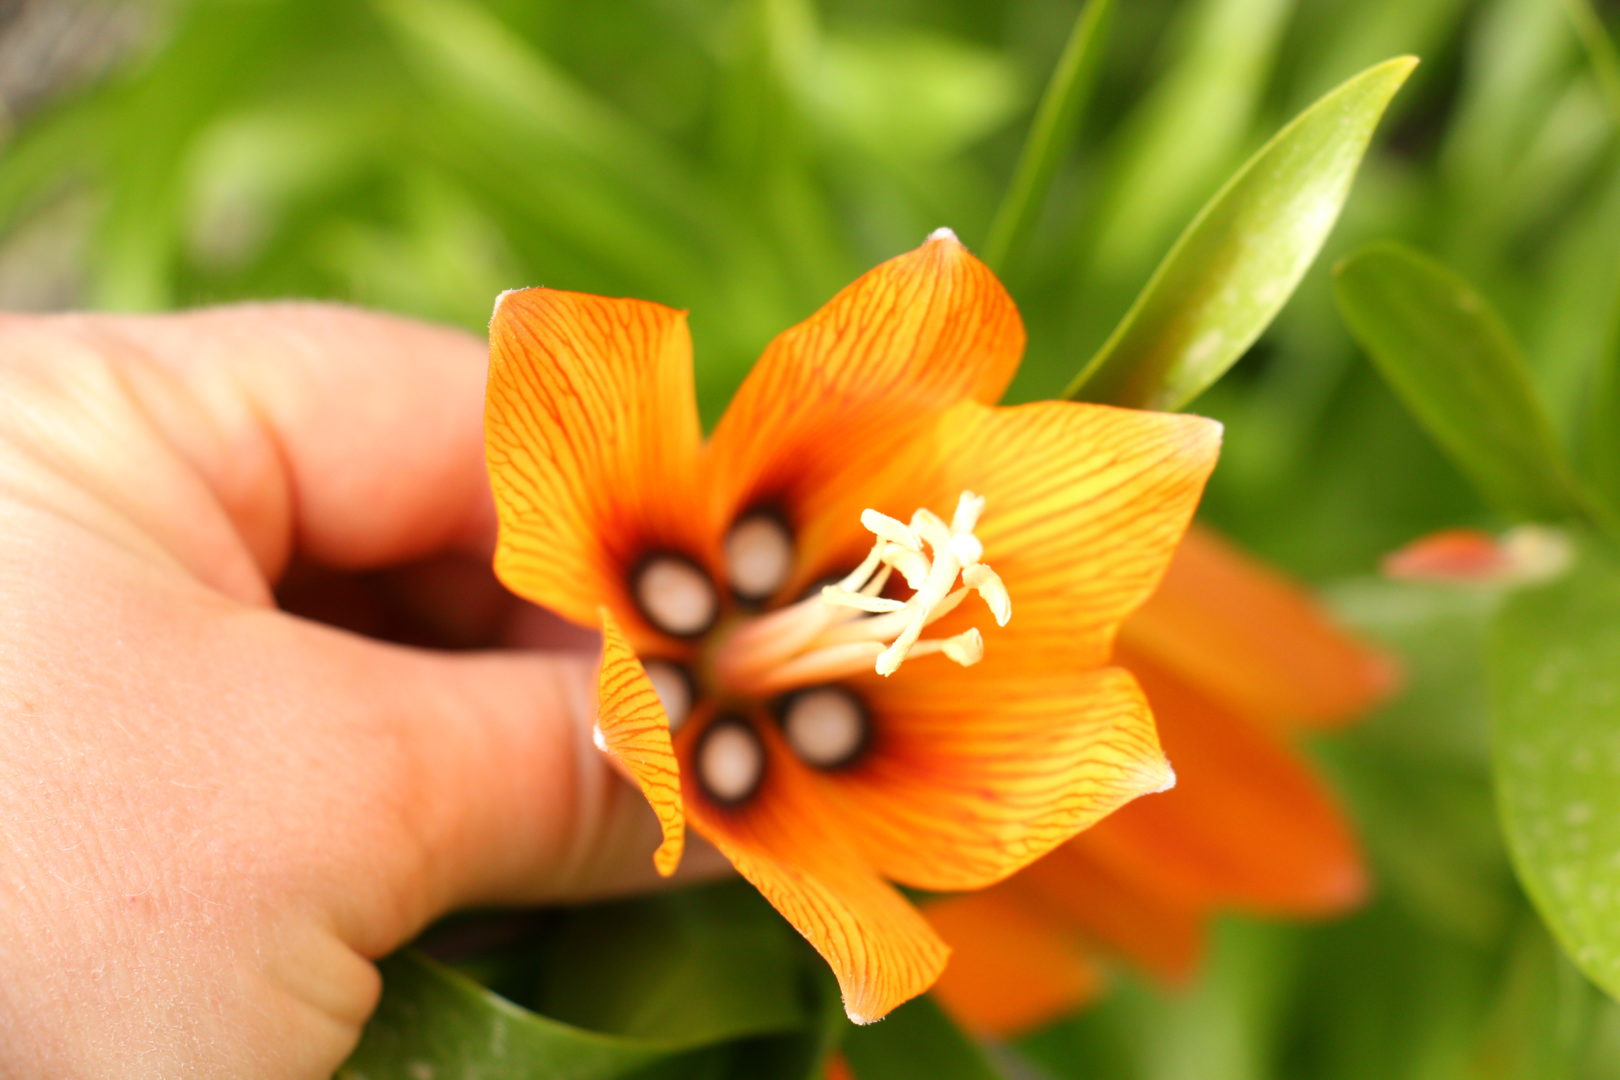 Оранжевый колокольчик - цветок рябчика императорского, или фритиллярии